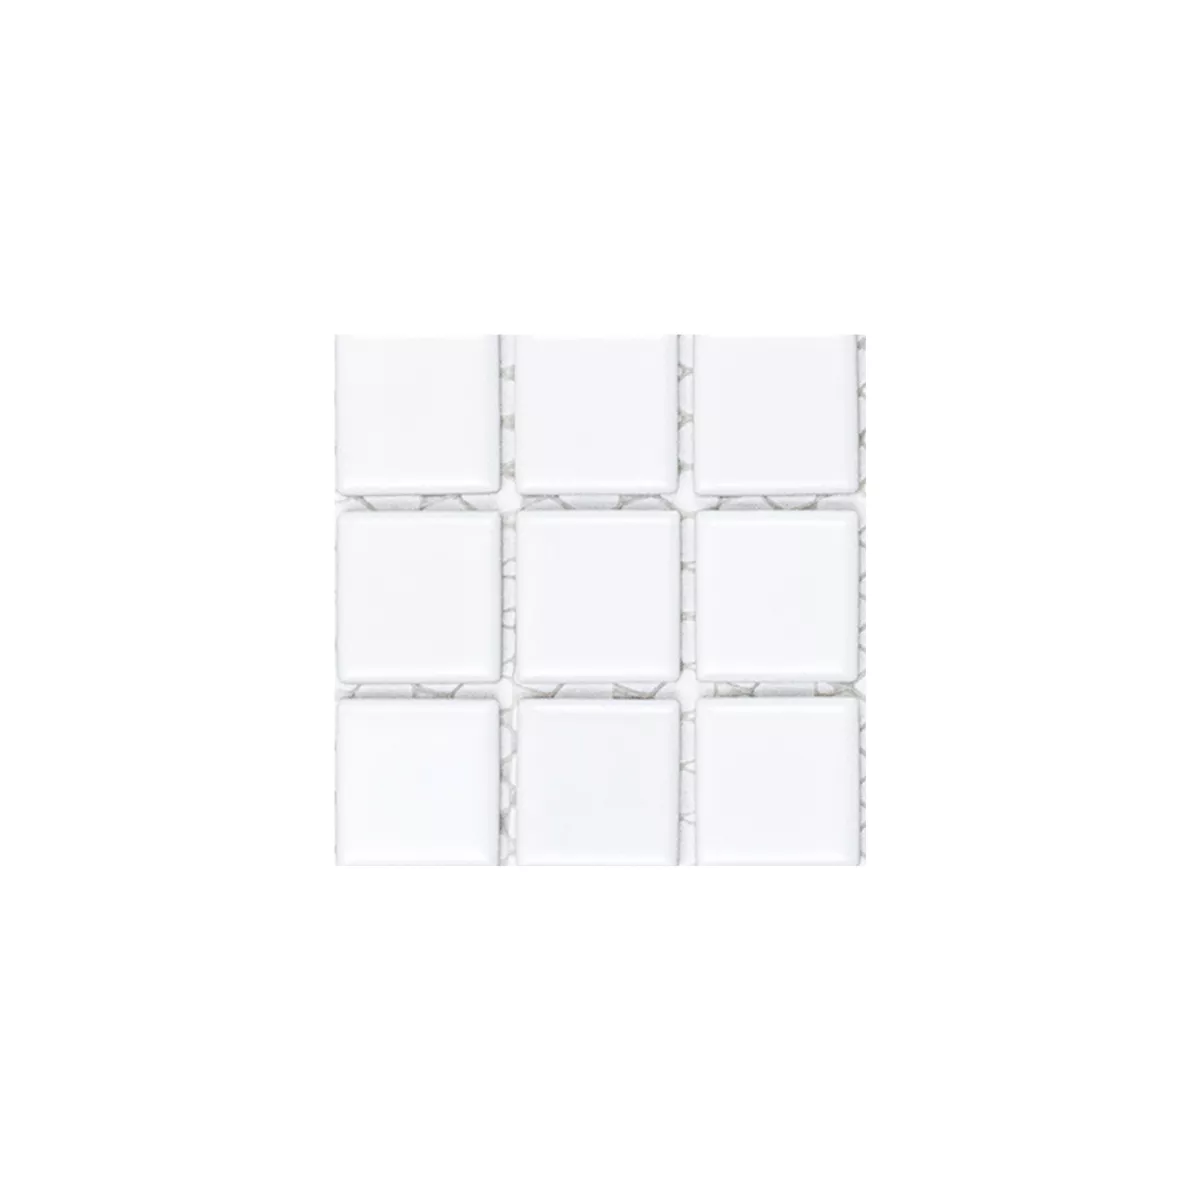 Sample Mosaic Tiles Ceramic White Mat